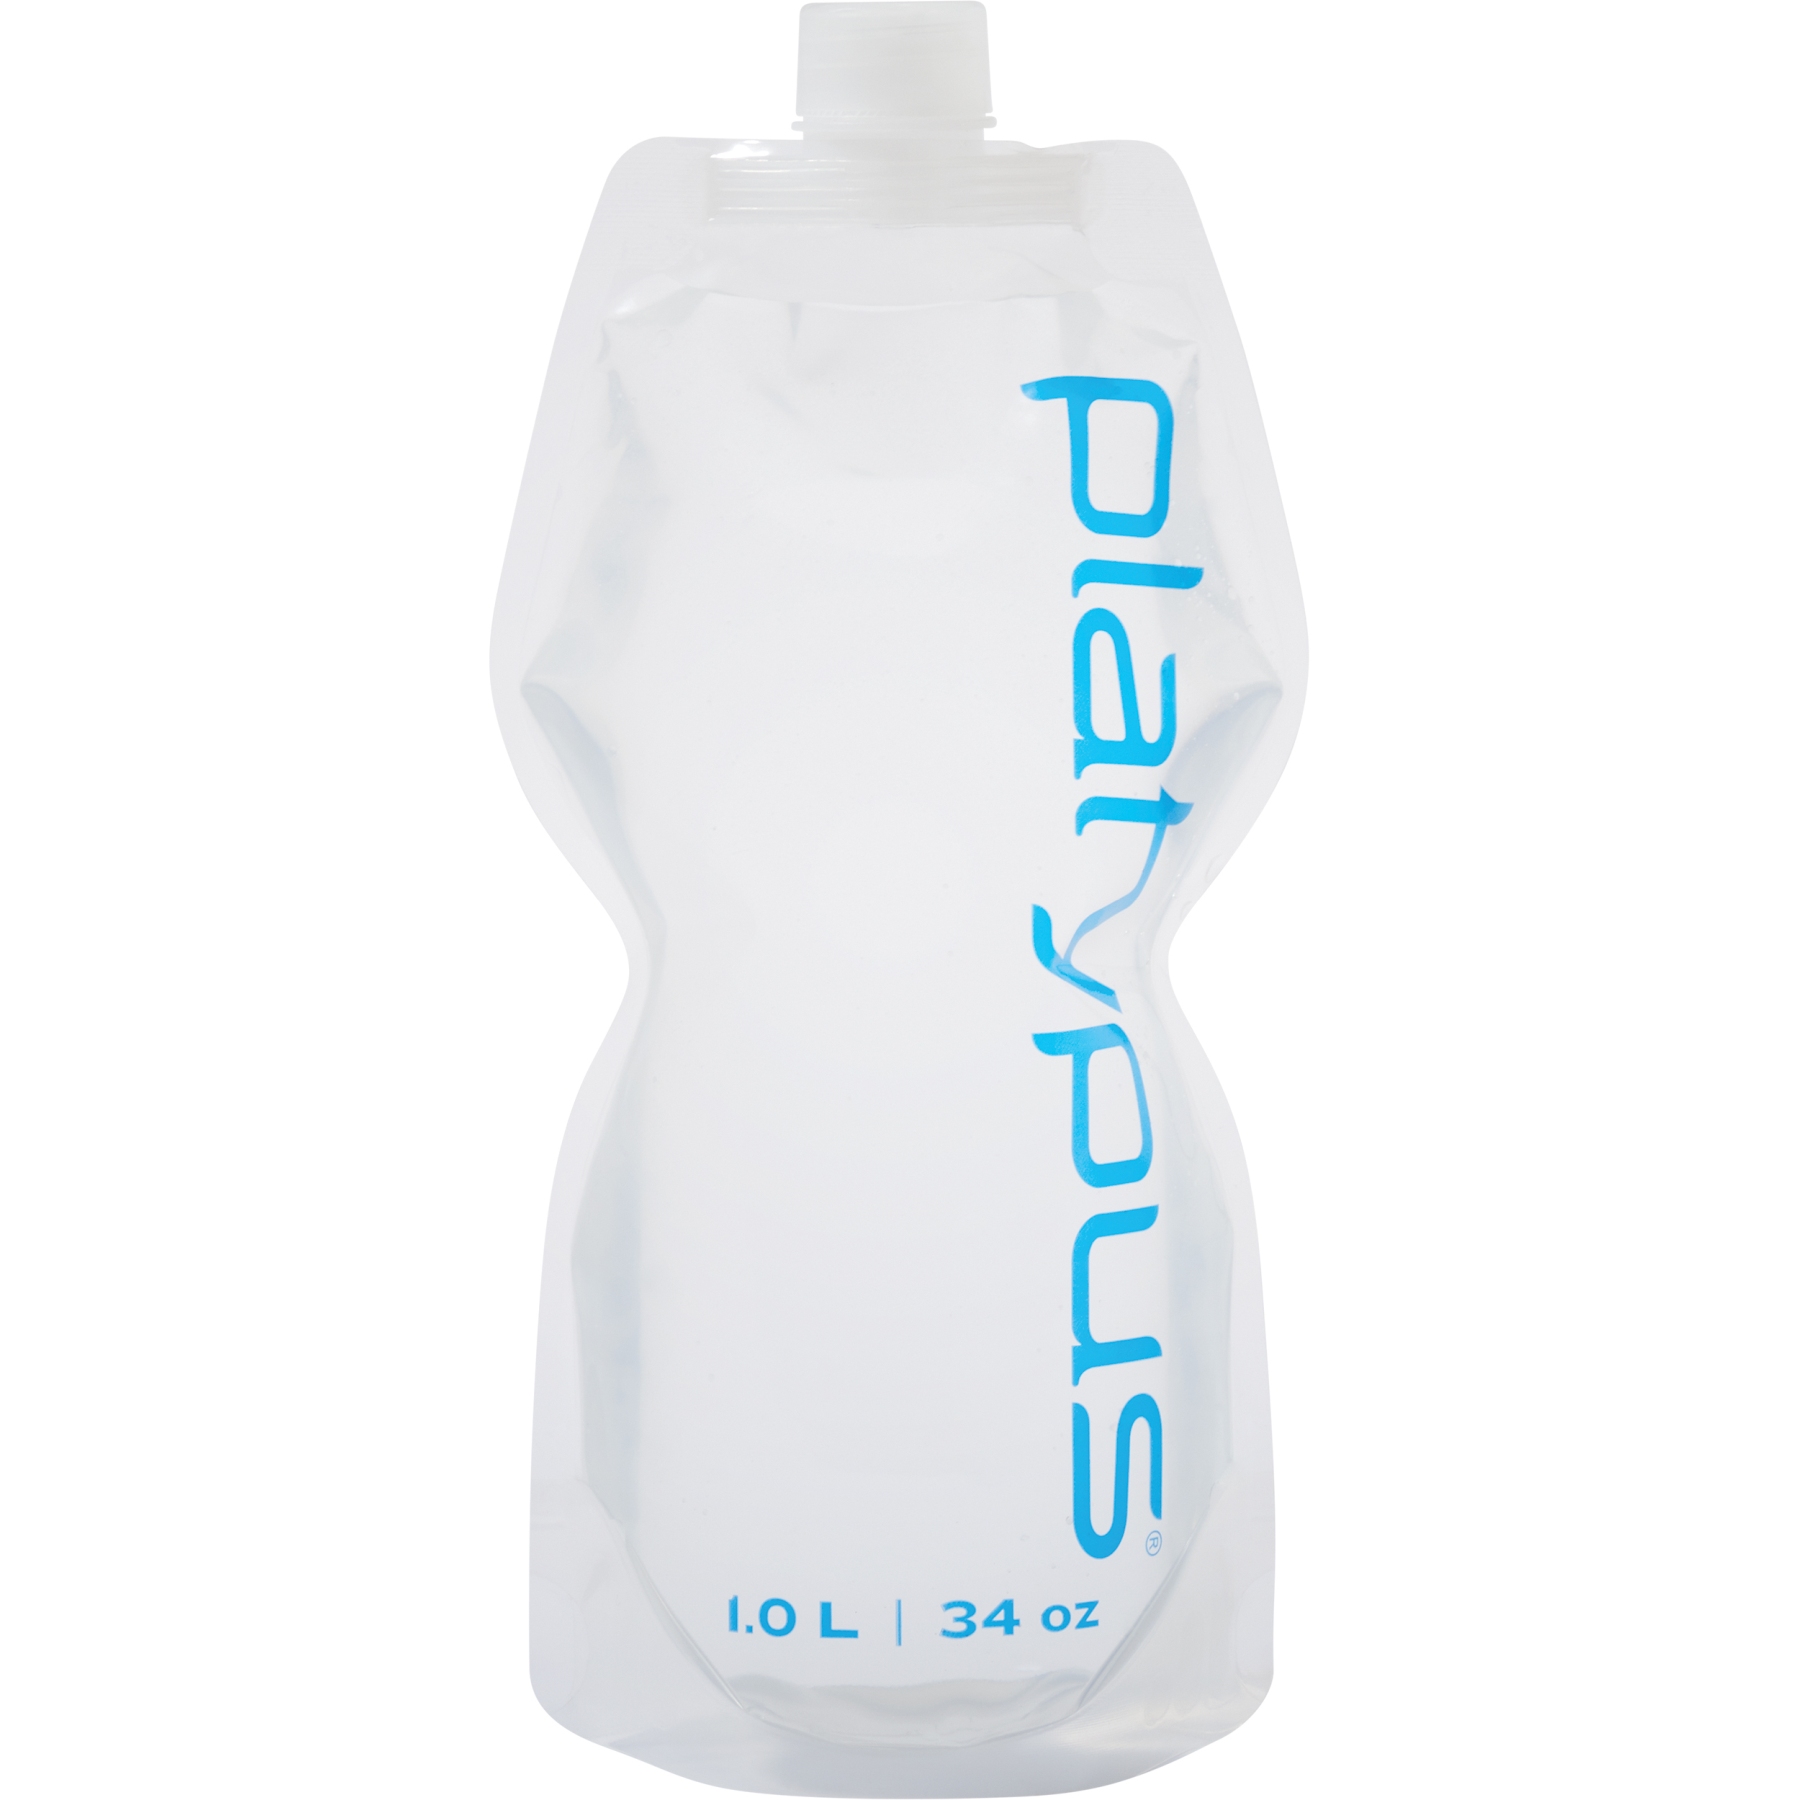 Productfoto van Platypus SoftBottle 1L Flexibele Drinkfles met Closure Cap - Logo